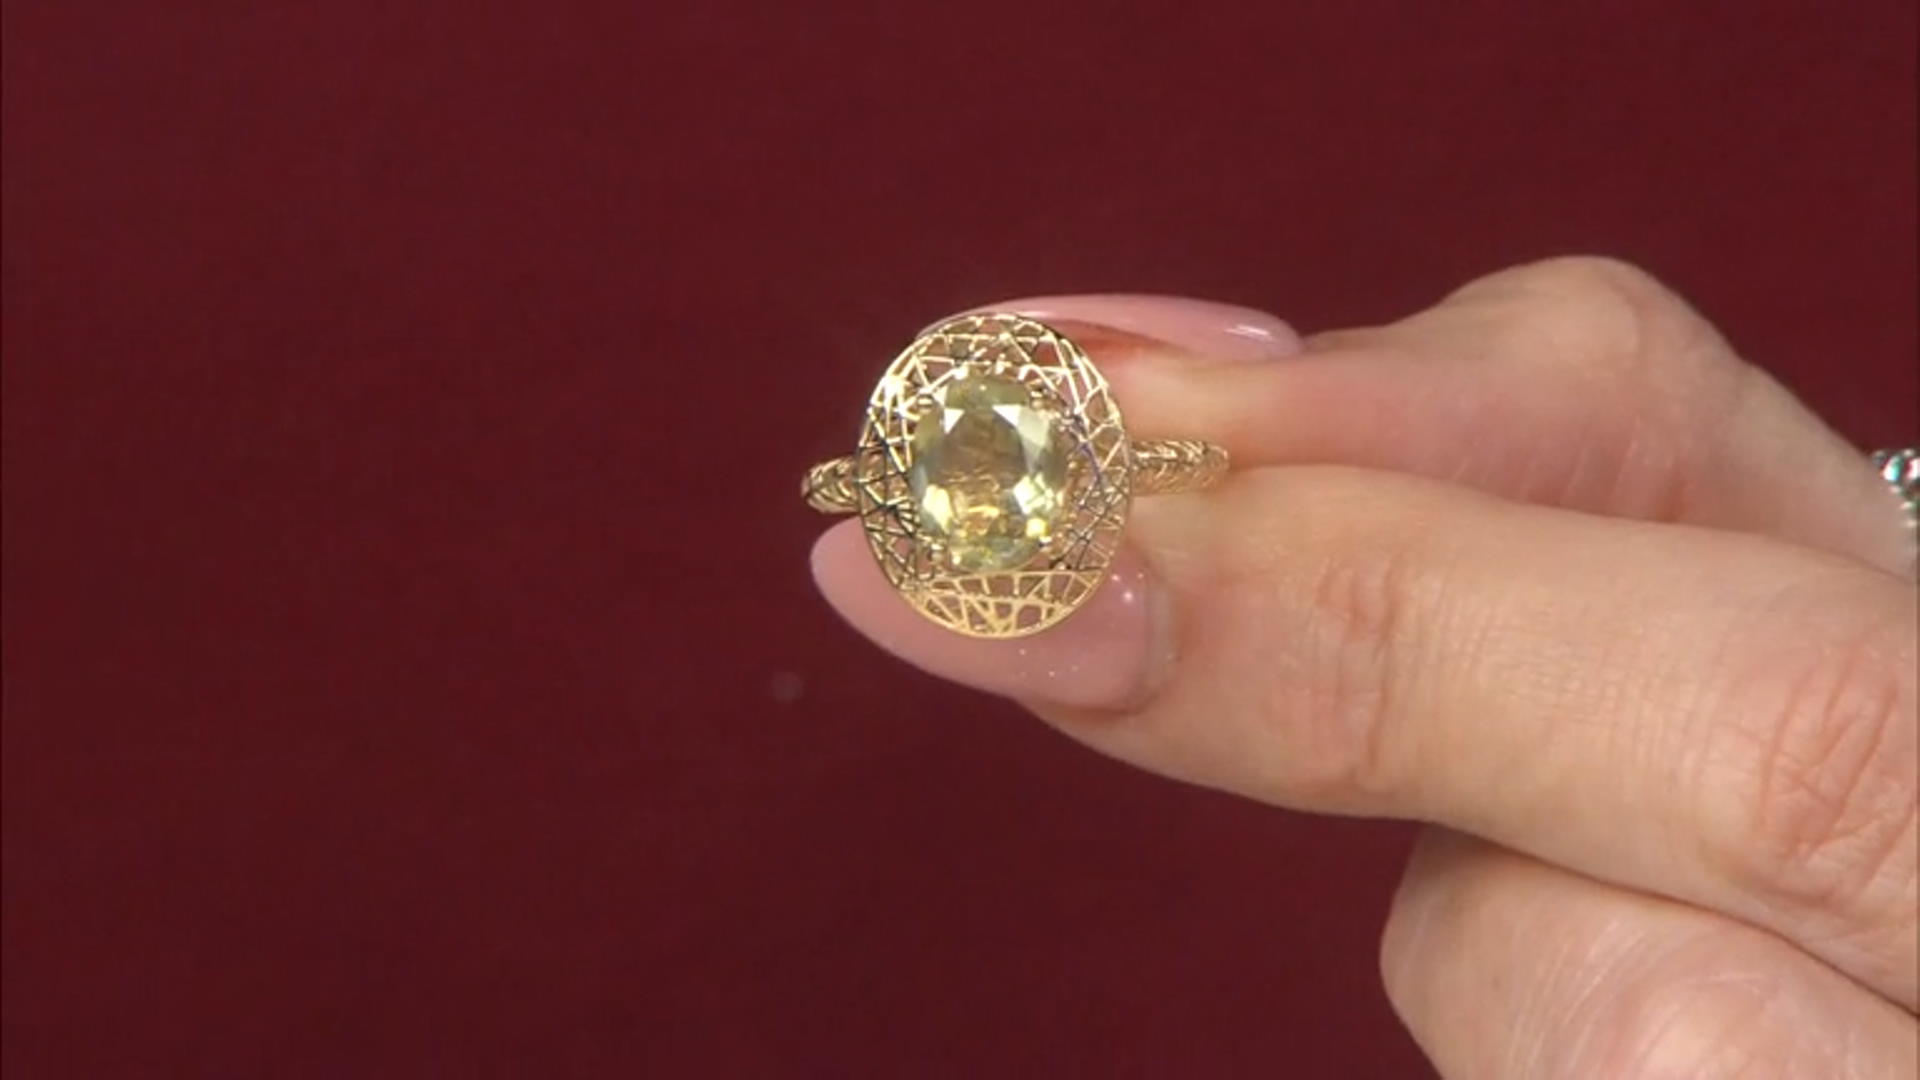 Green Turkish Diaspore 14k Yellow Gold Filigree Ring 1.45ct Video Thumbnail